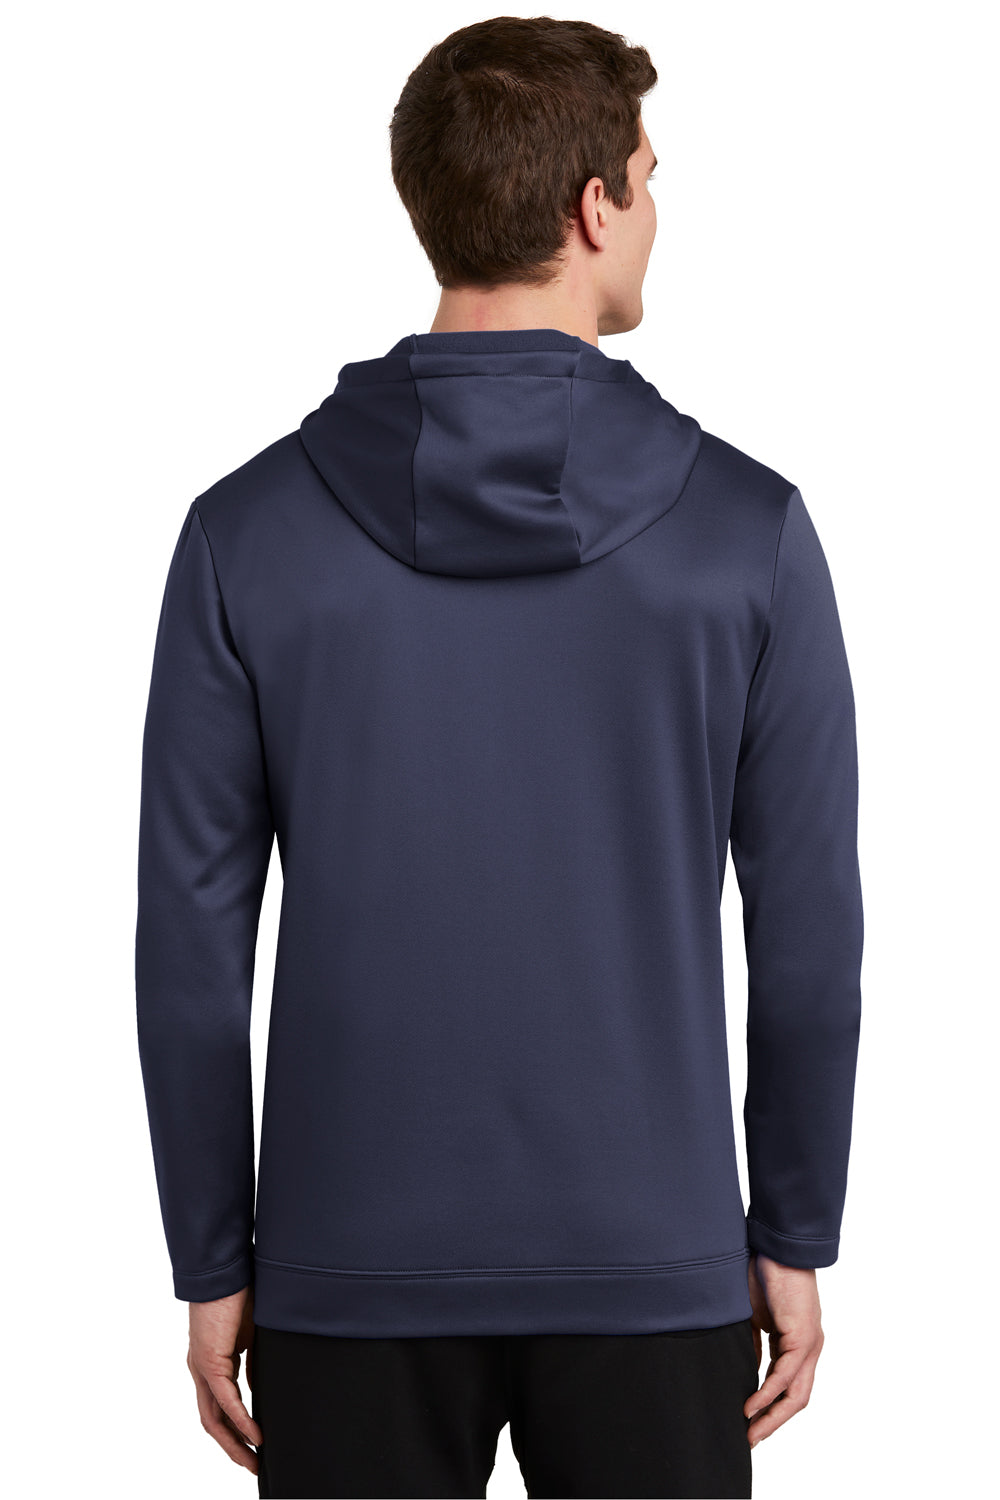 Nike NKAH6259 Mens Therma-Fit Moisture Wicking Fleece Full Zip Hooded Sweatshirt Hoodie Midnight Navy Blue Model Back